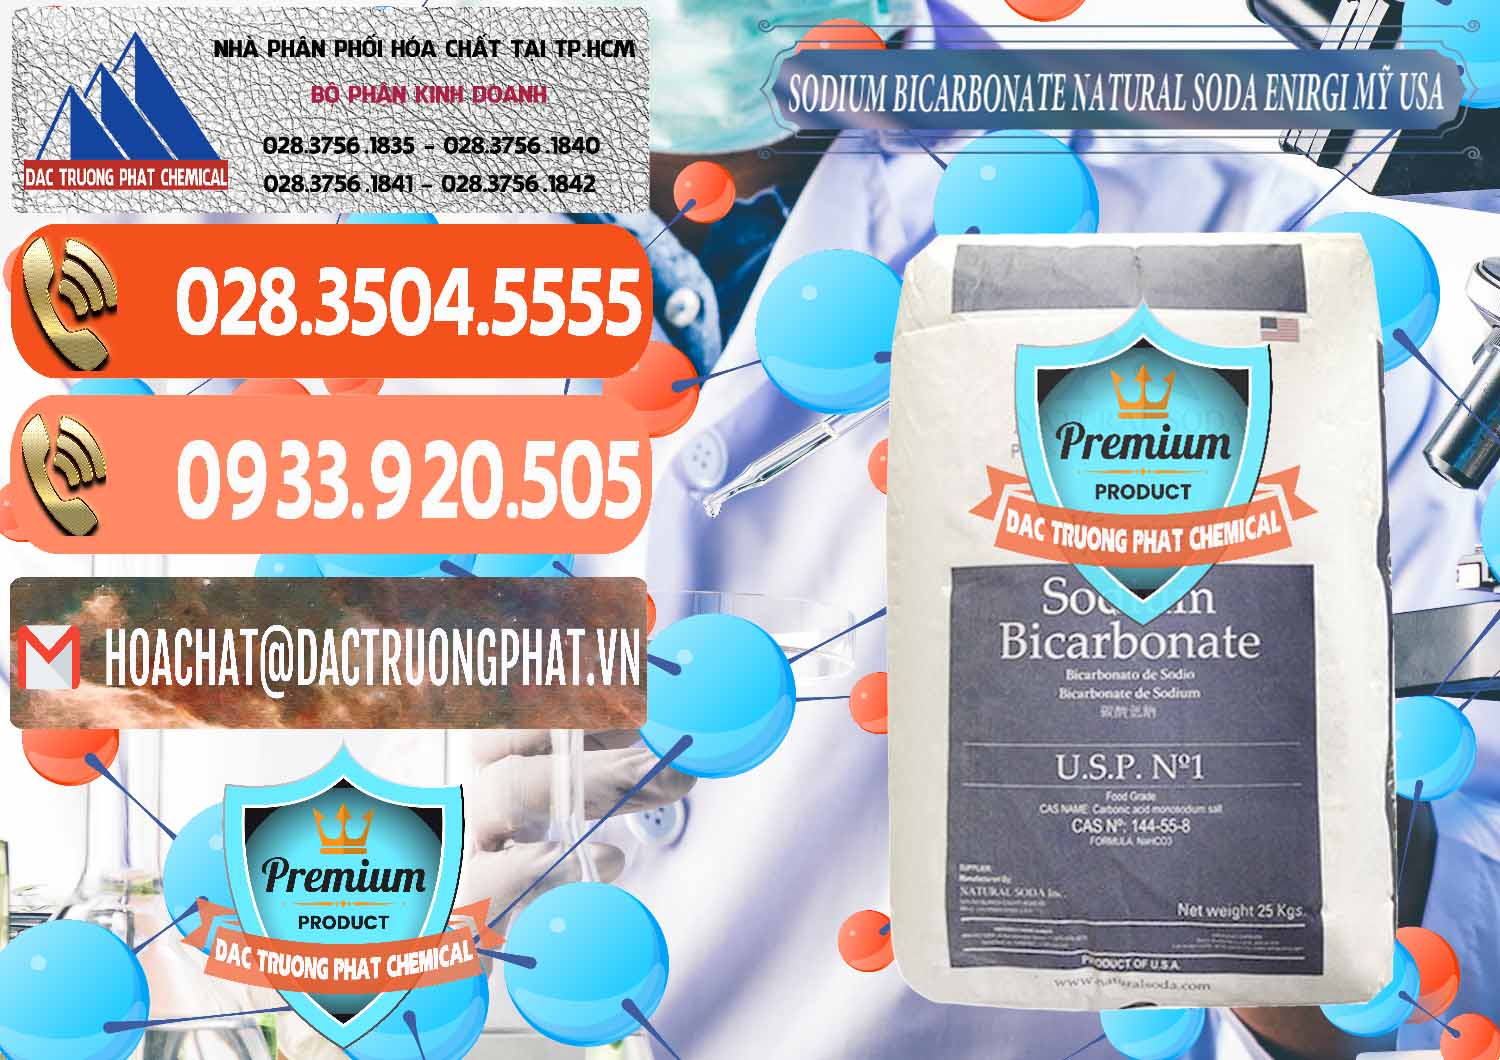 Cty nhập khẩu - bán Sodium Bicarbonate – Bicar NaHCO3 Food Grade Natural Soda Enirgi Mỹ USA - 0257 - Nơi bán & cung cấp hóa chất tại TP.HCM - hoachatmientay.com